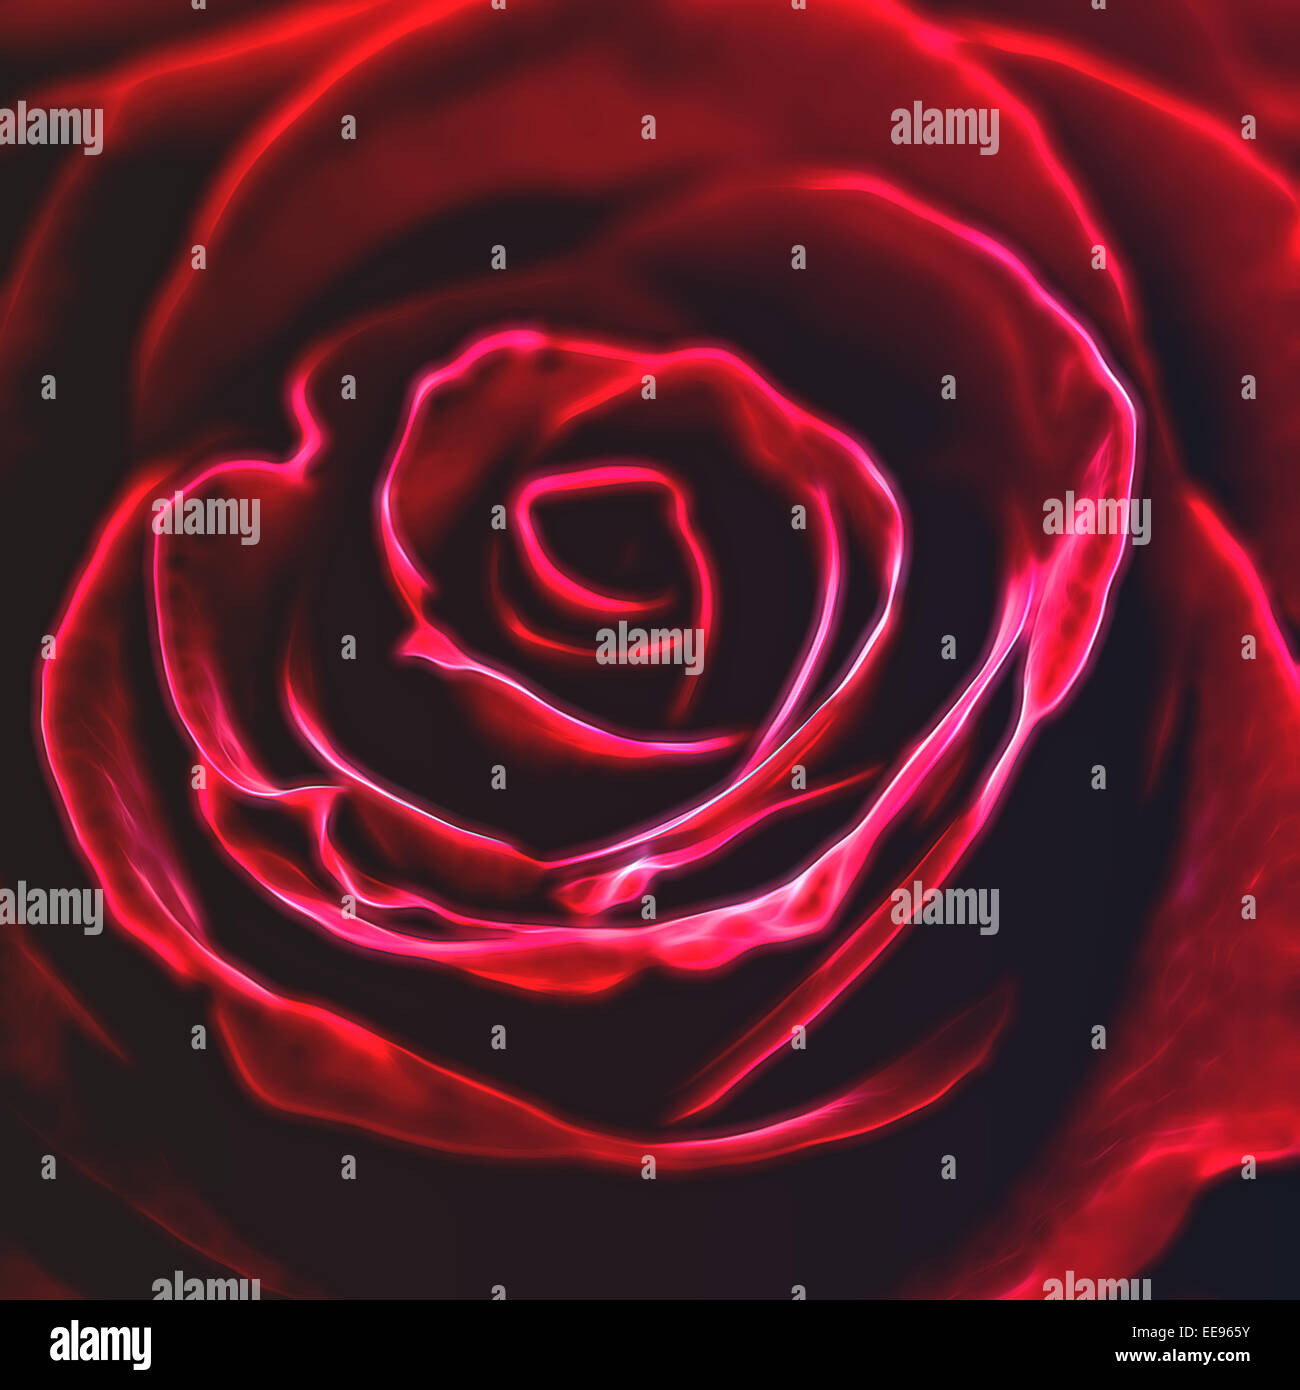 Fraktal. Rote rose in Fraktale design Stockfoto